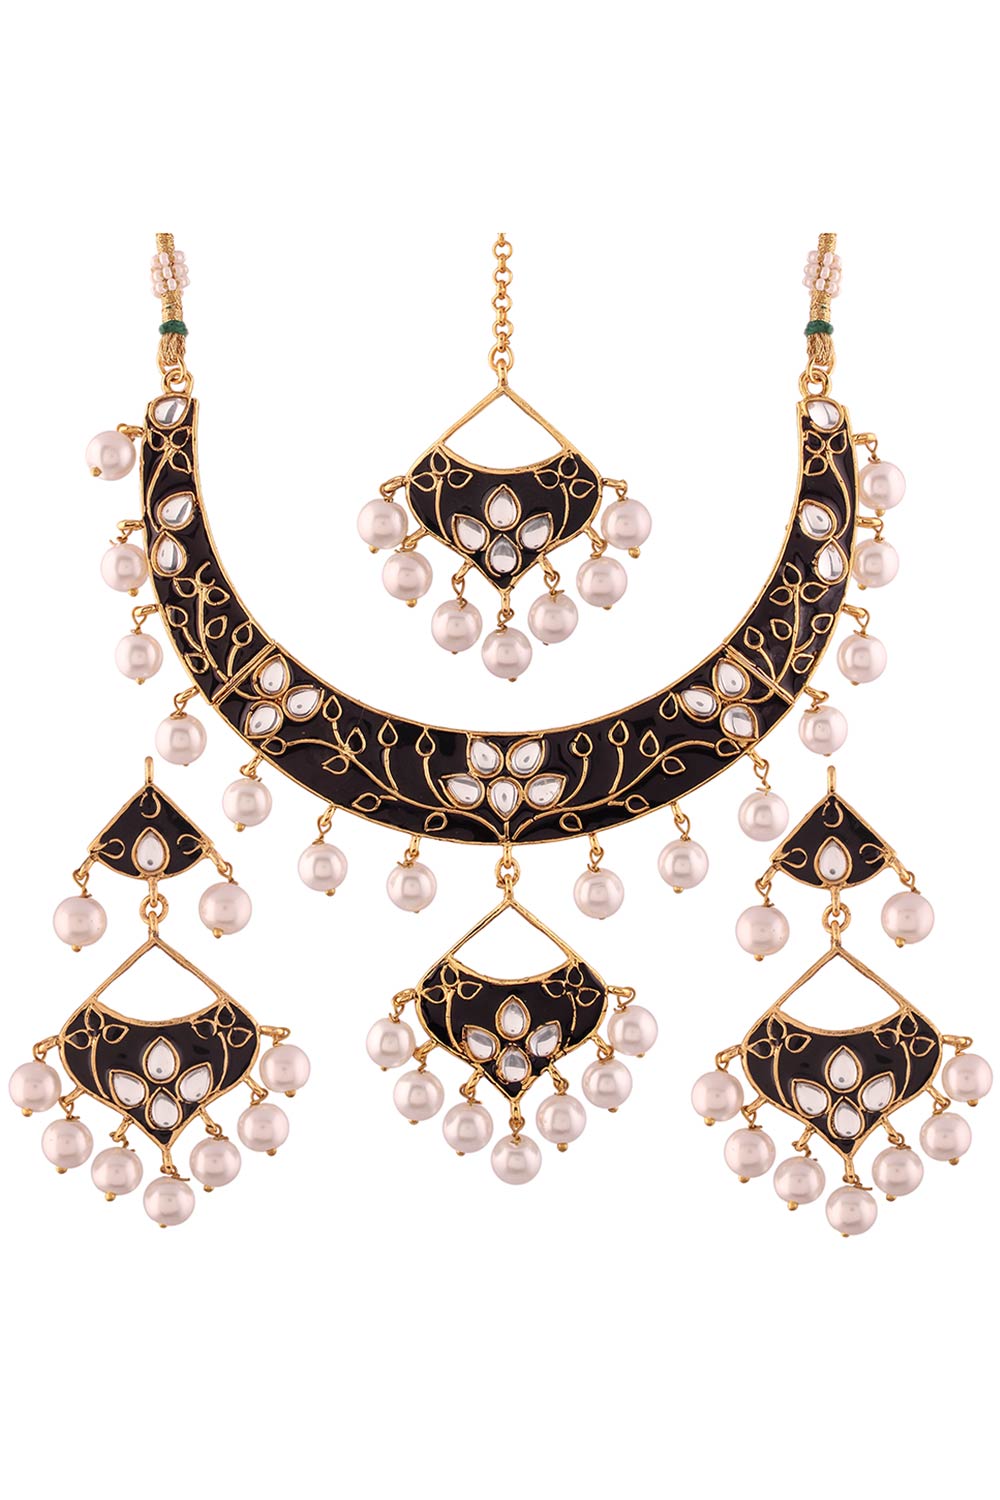 Buy Women's Alloy Necklace & Earring Sets in Black